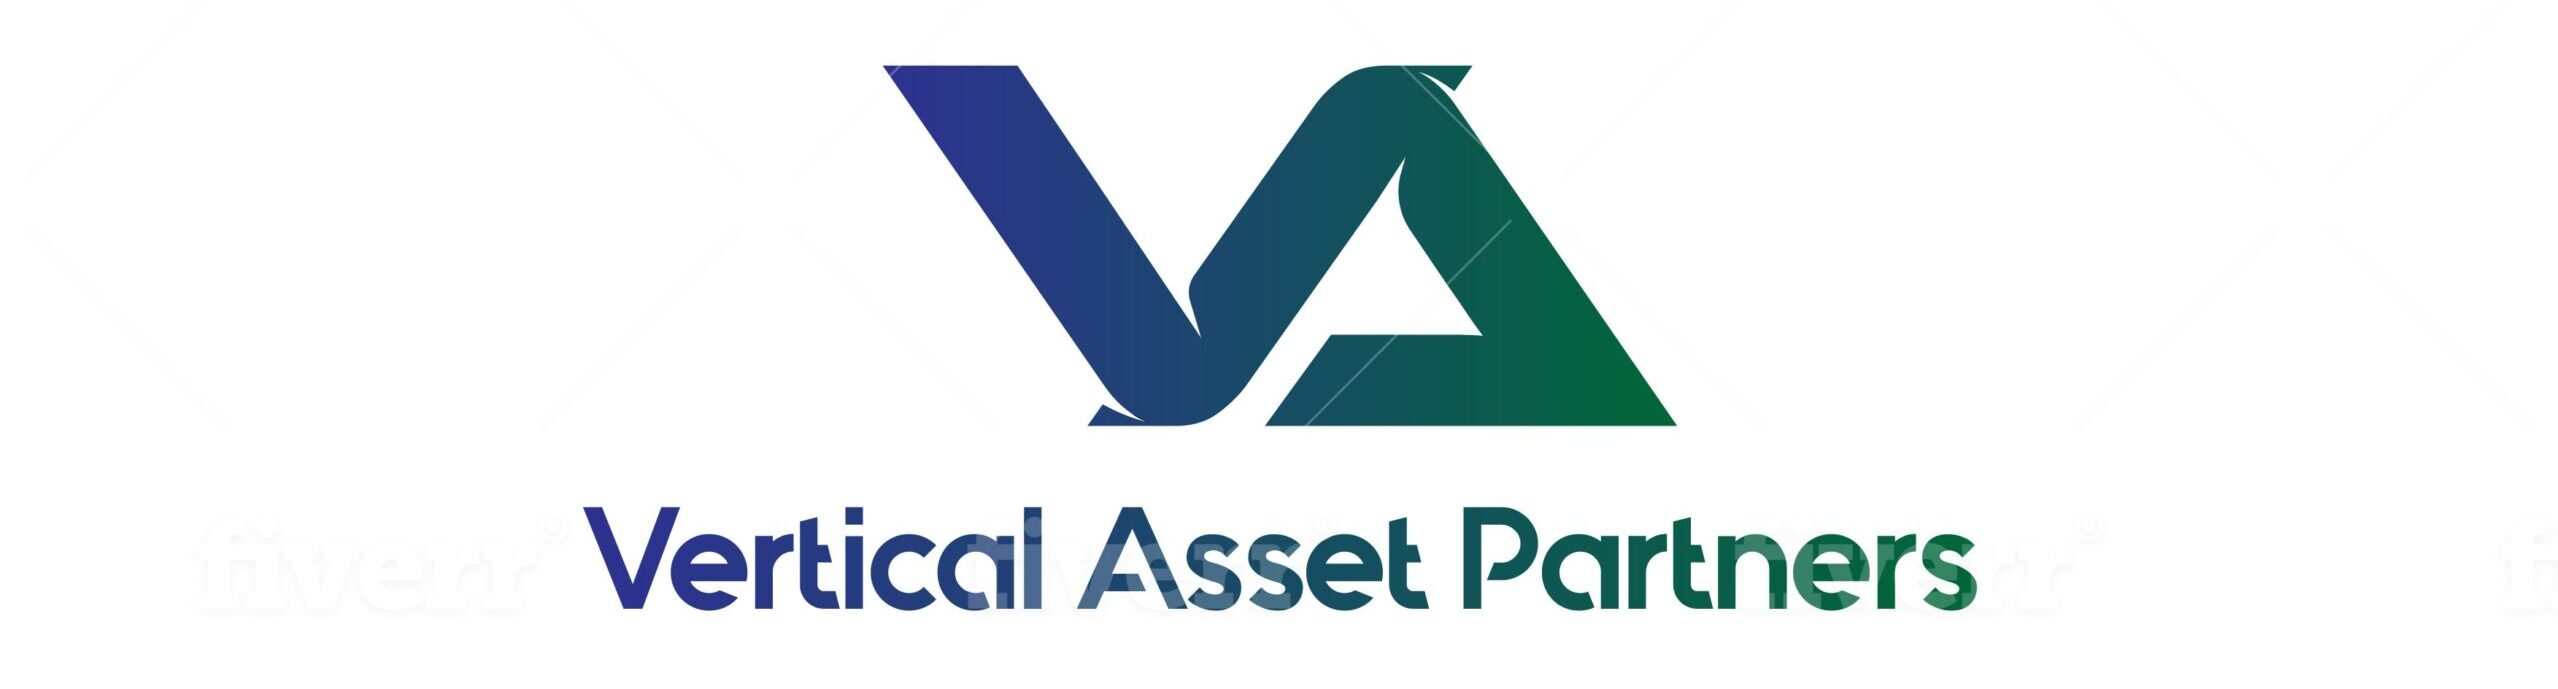 Vertical Asset Partners